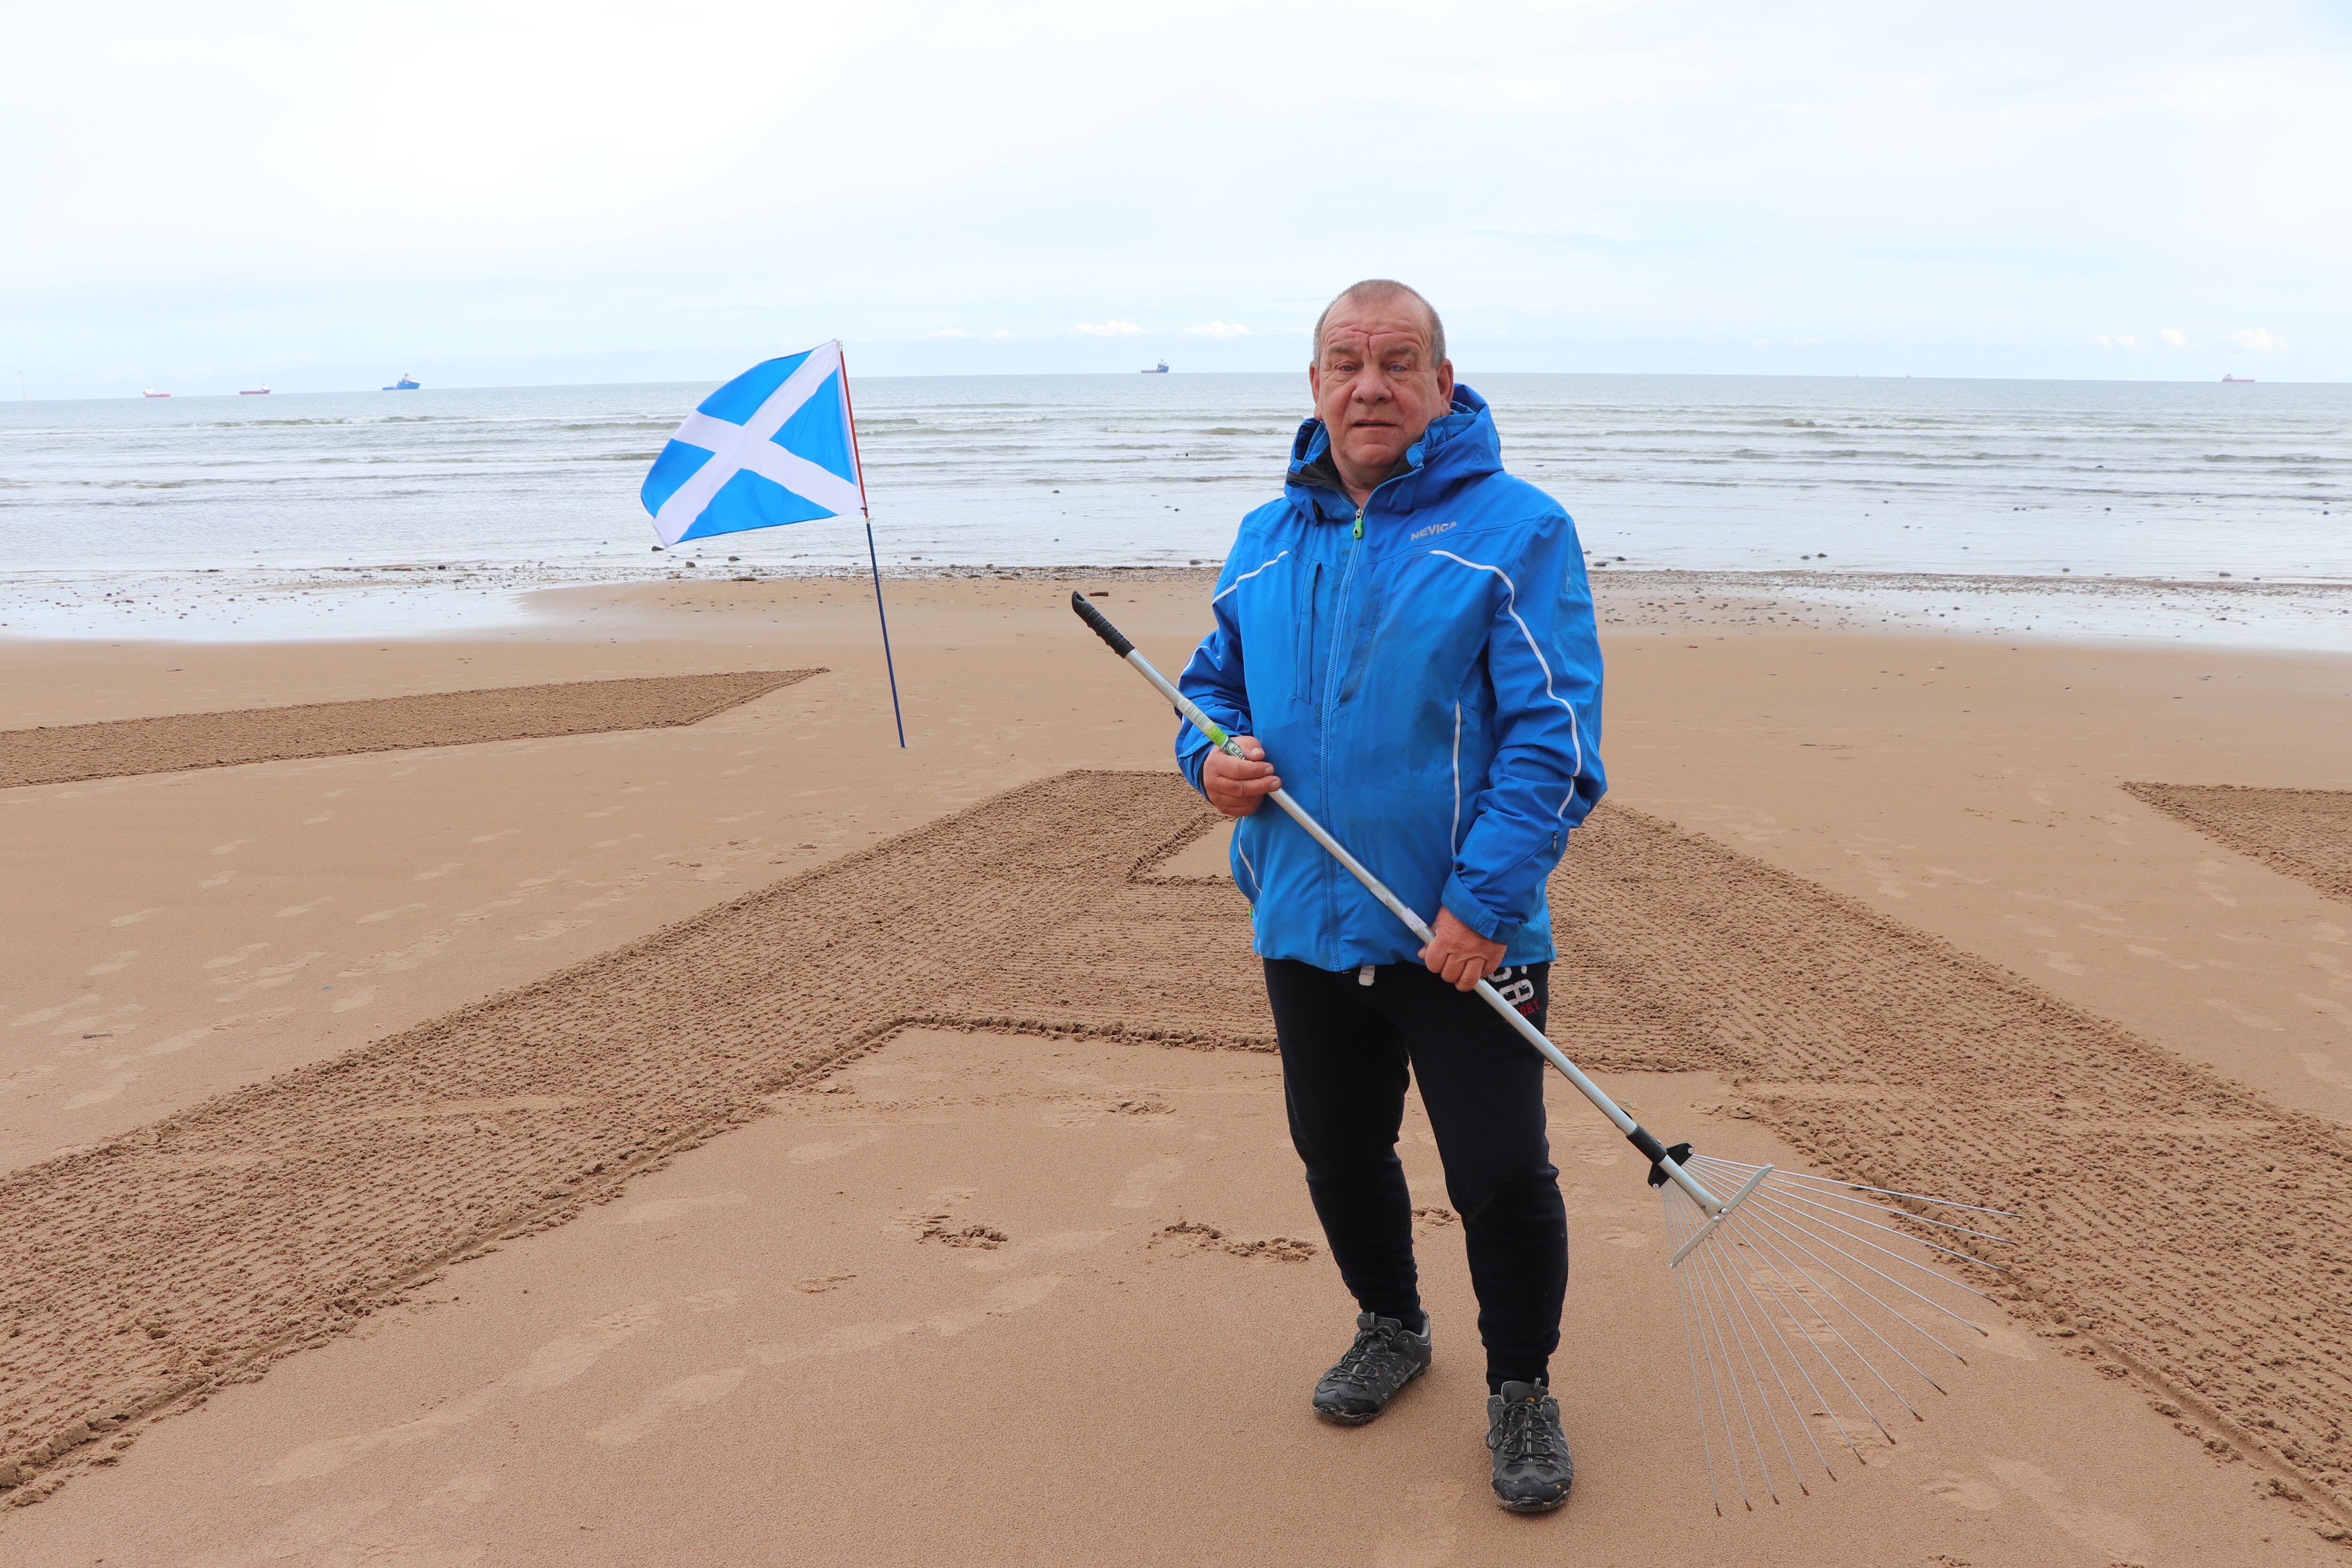 Dougie Bogie escribe con un rastrillo las letras del partido Alba, en la playa de Aberdeen.